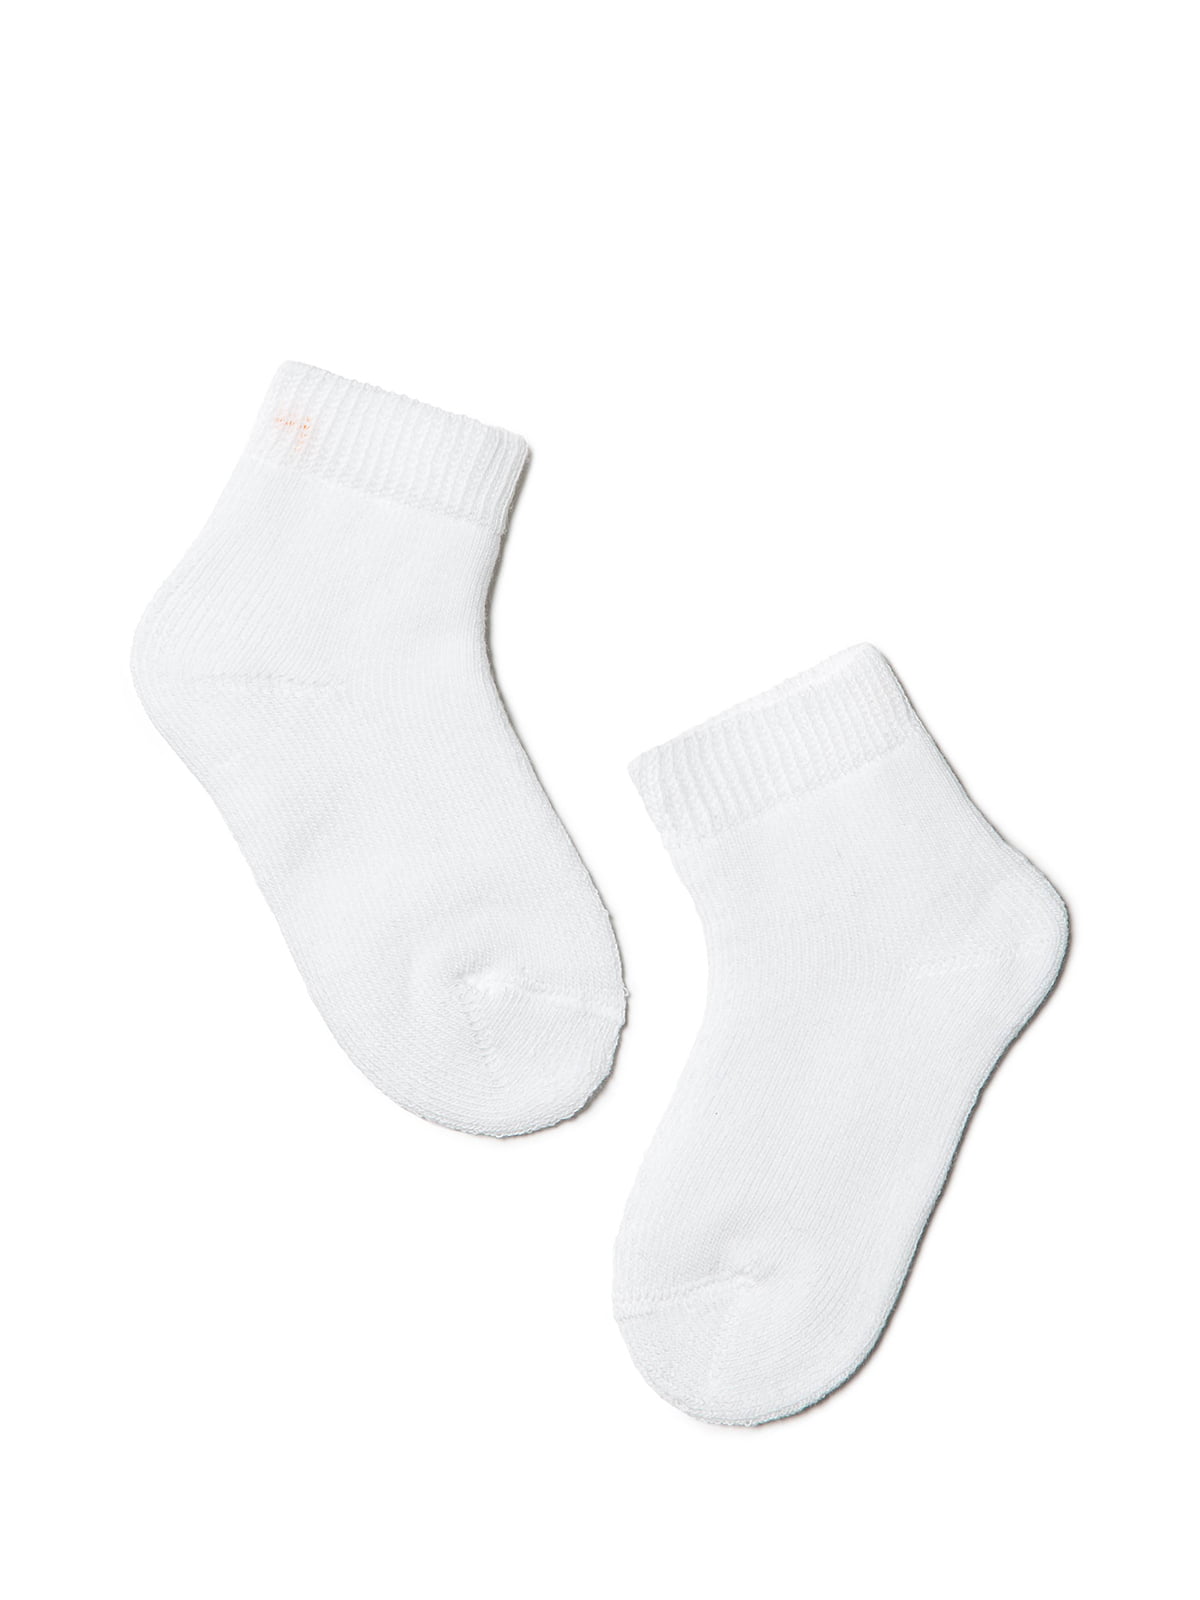 Шкарпетки білі махрові | 3750343